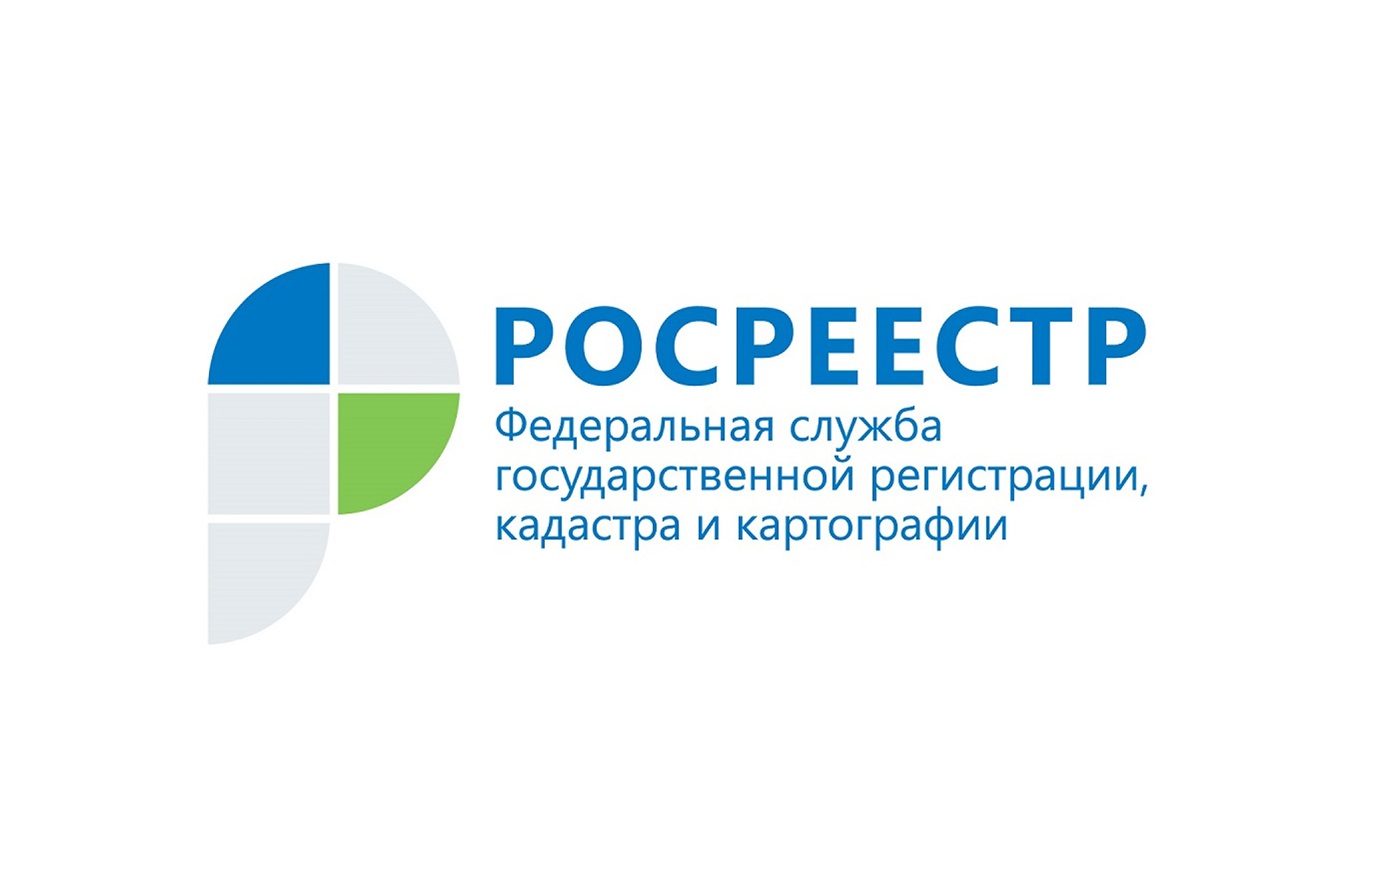 Создание НСПД обсудили в ПФО на совещании с участием Игоря Комарова и Олега Скуфинского.